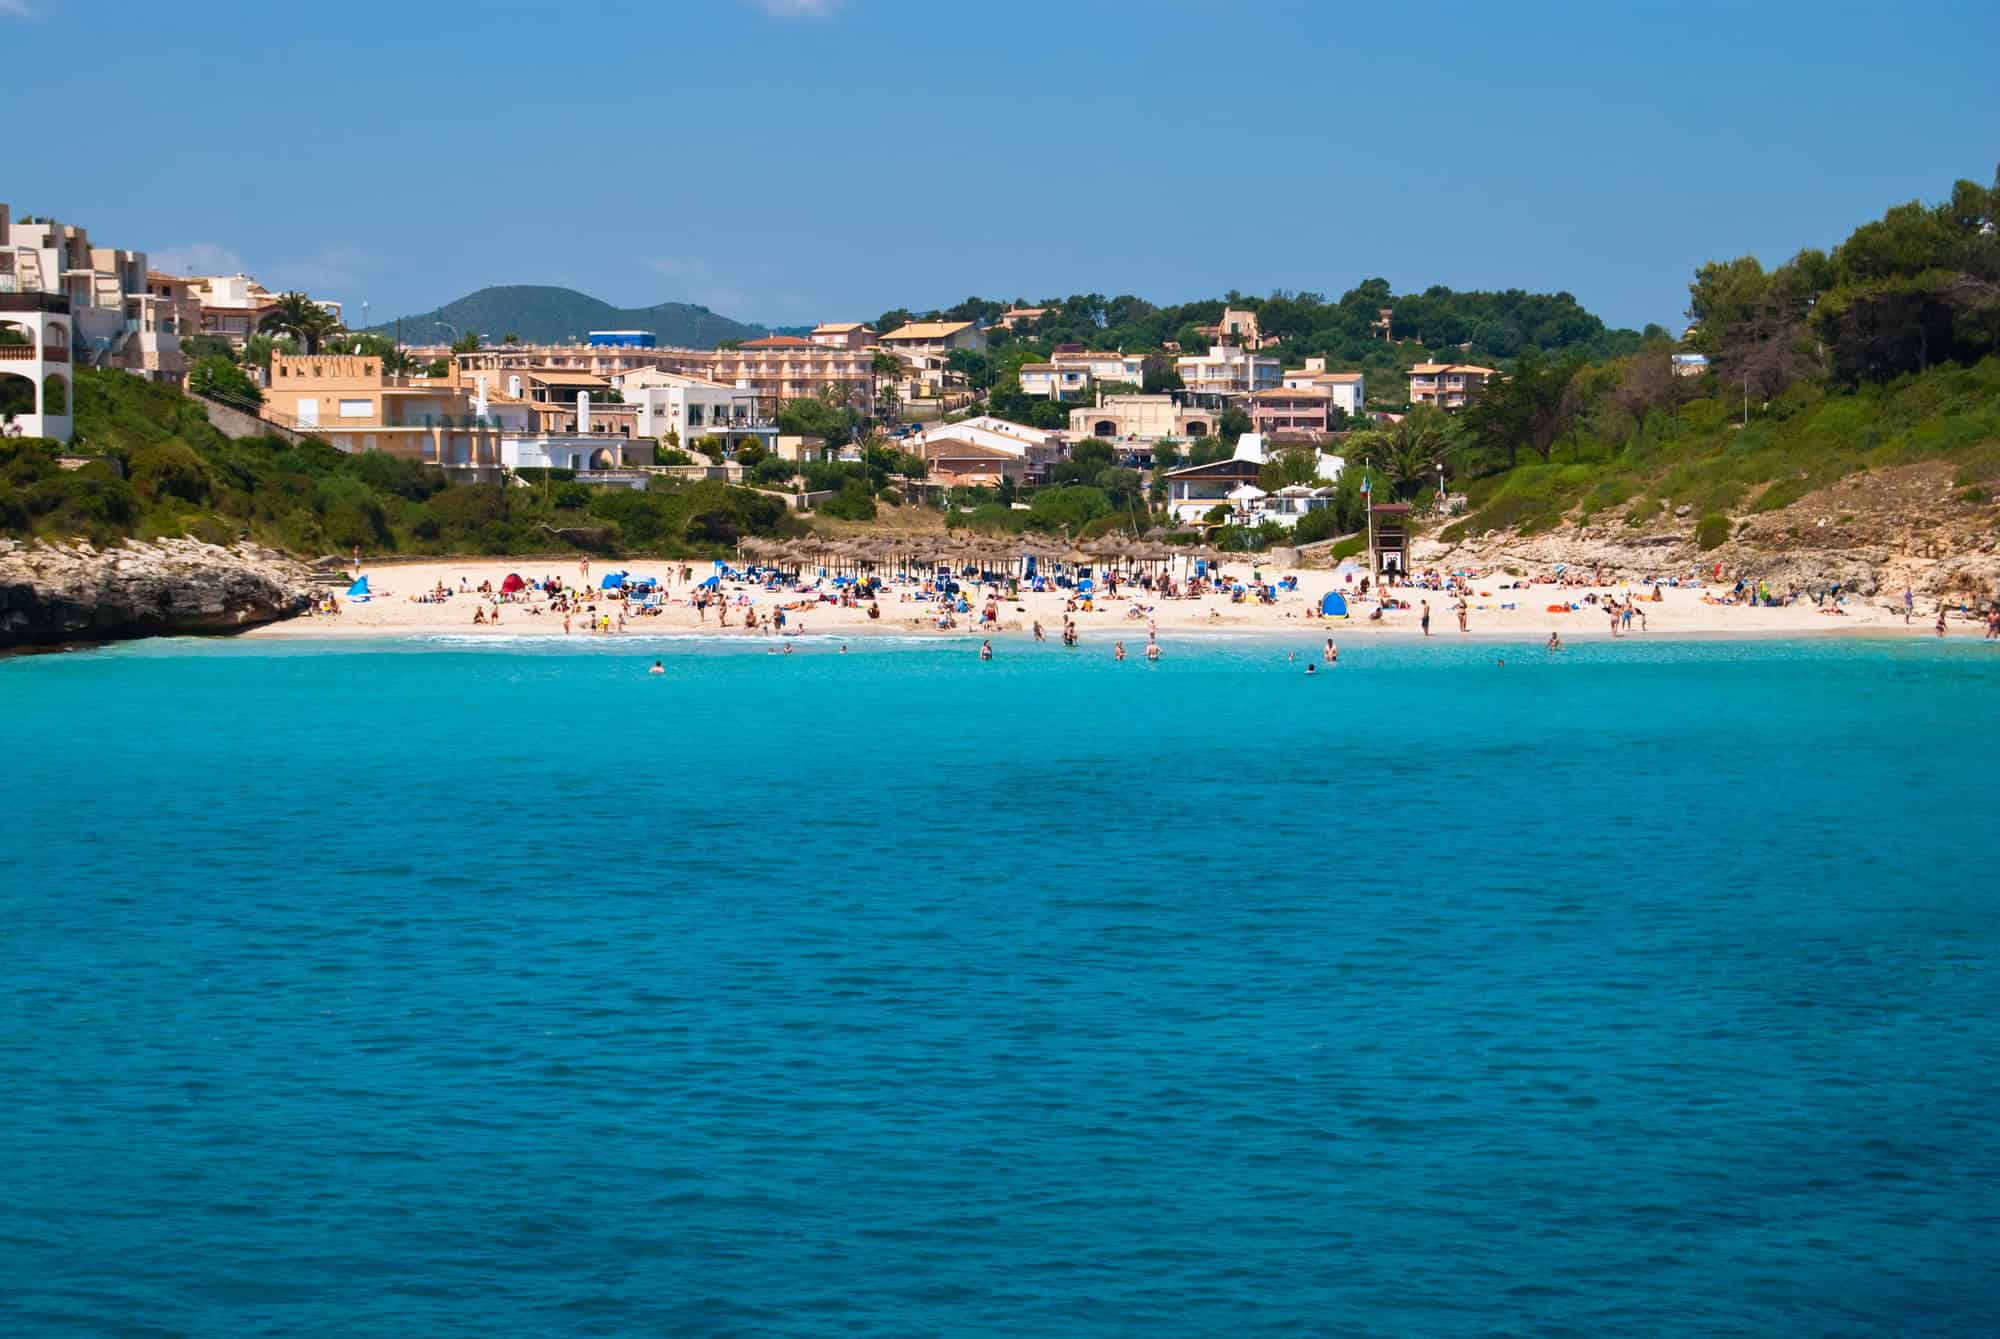 Cala Romantica town and the beach of Mediterranean Sea, Majorca island, Spain